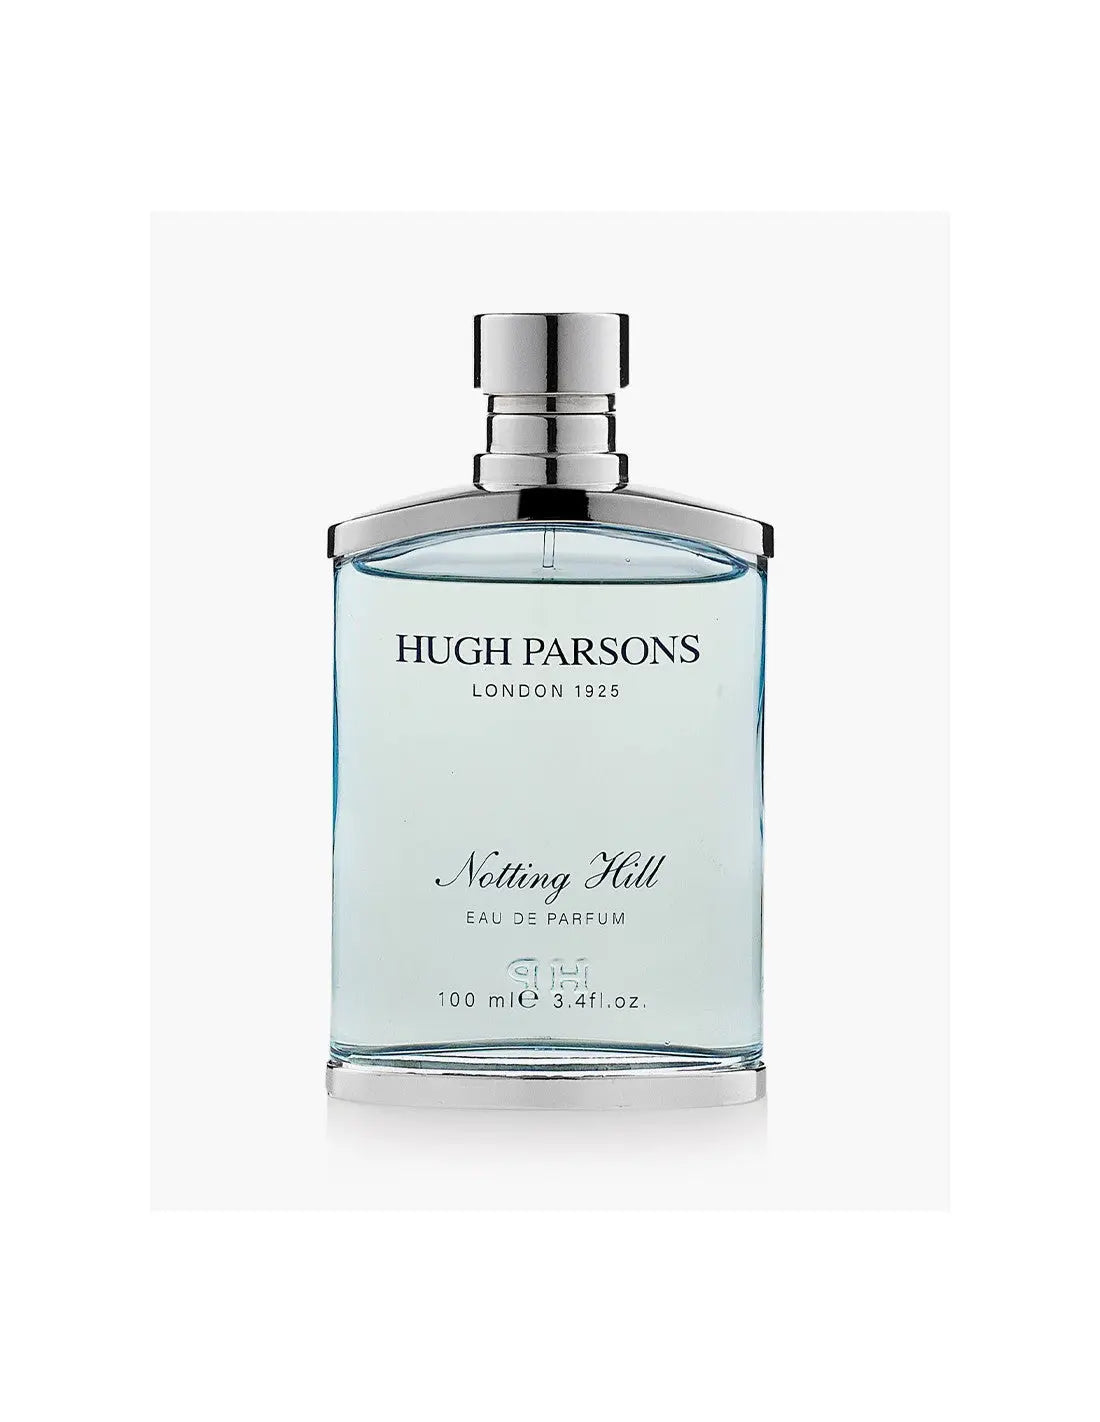 Hugh parsons Notting Hill - 100 ml